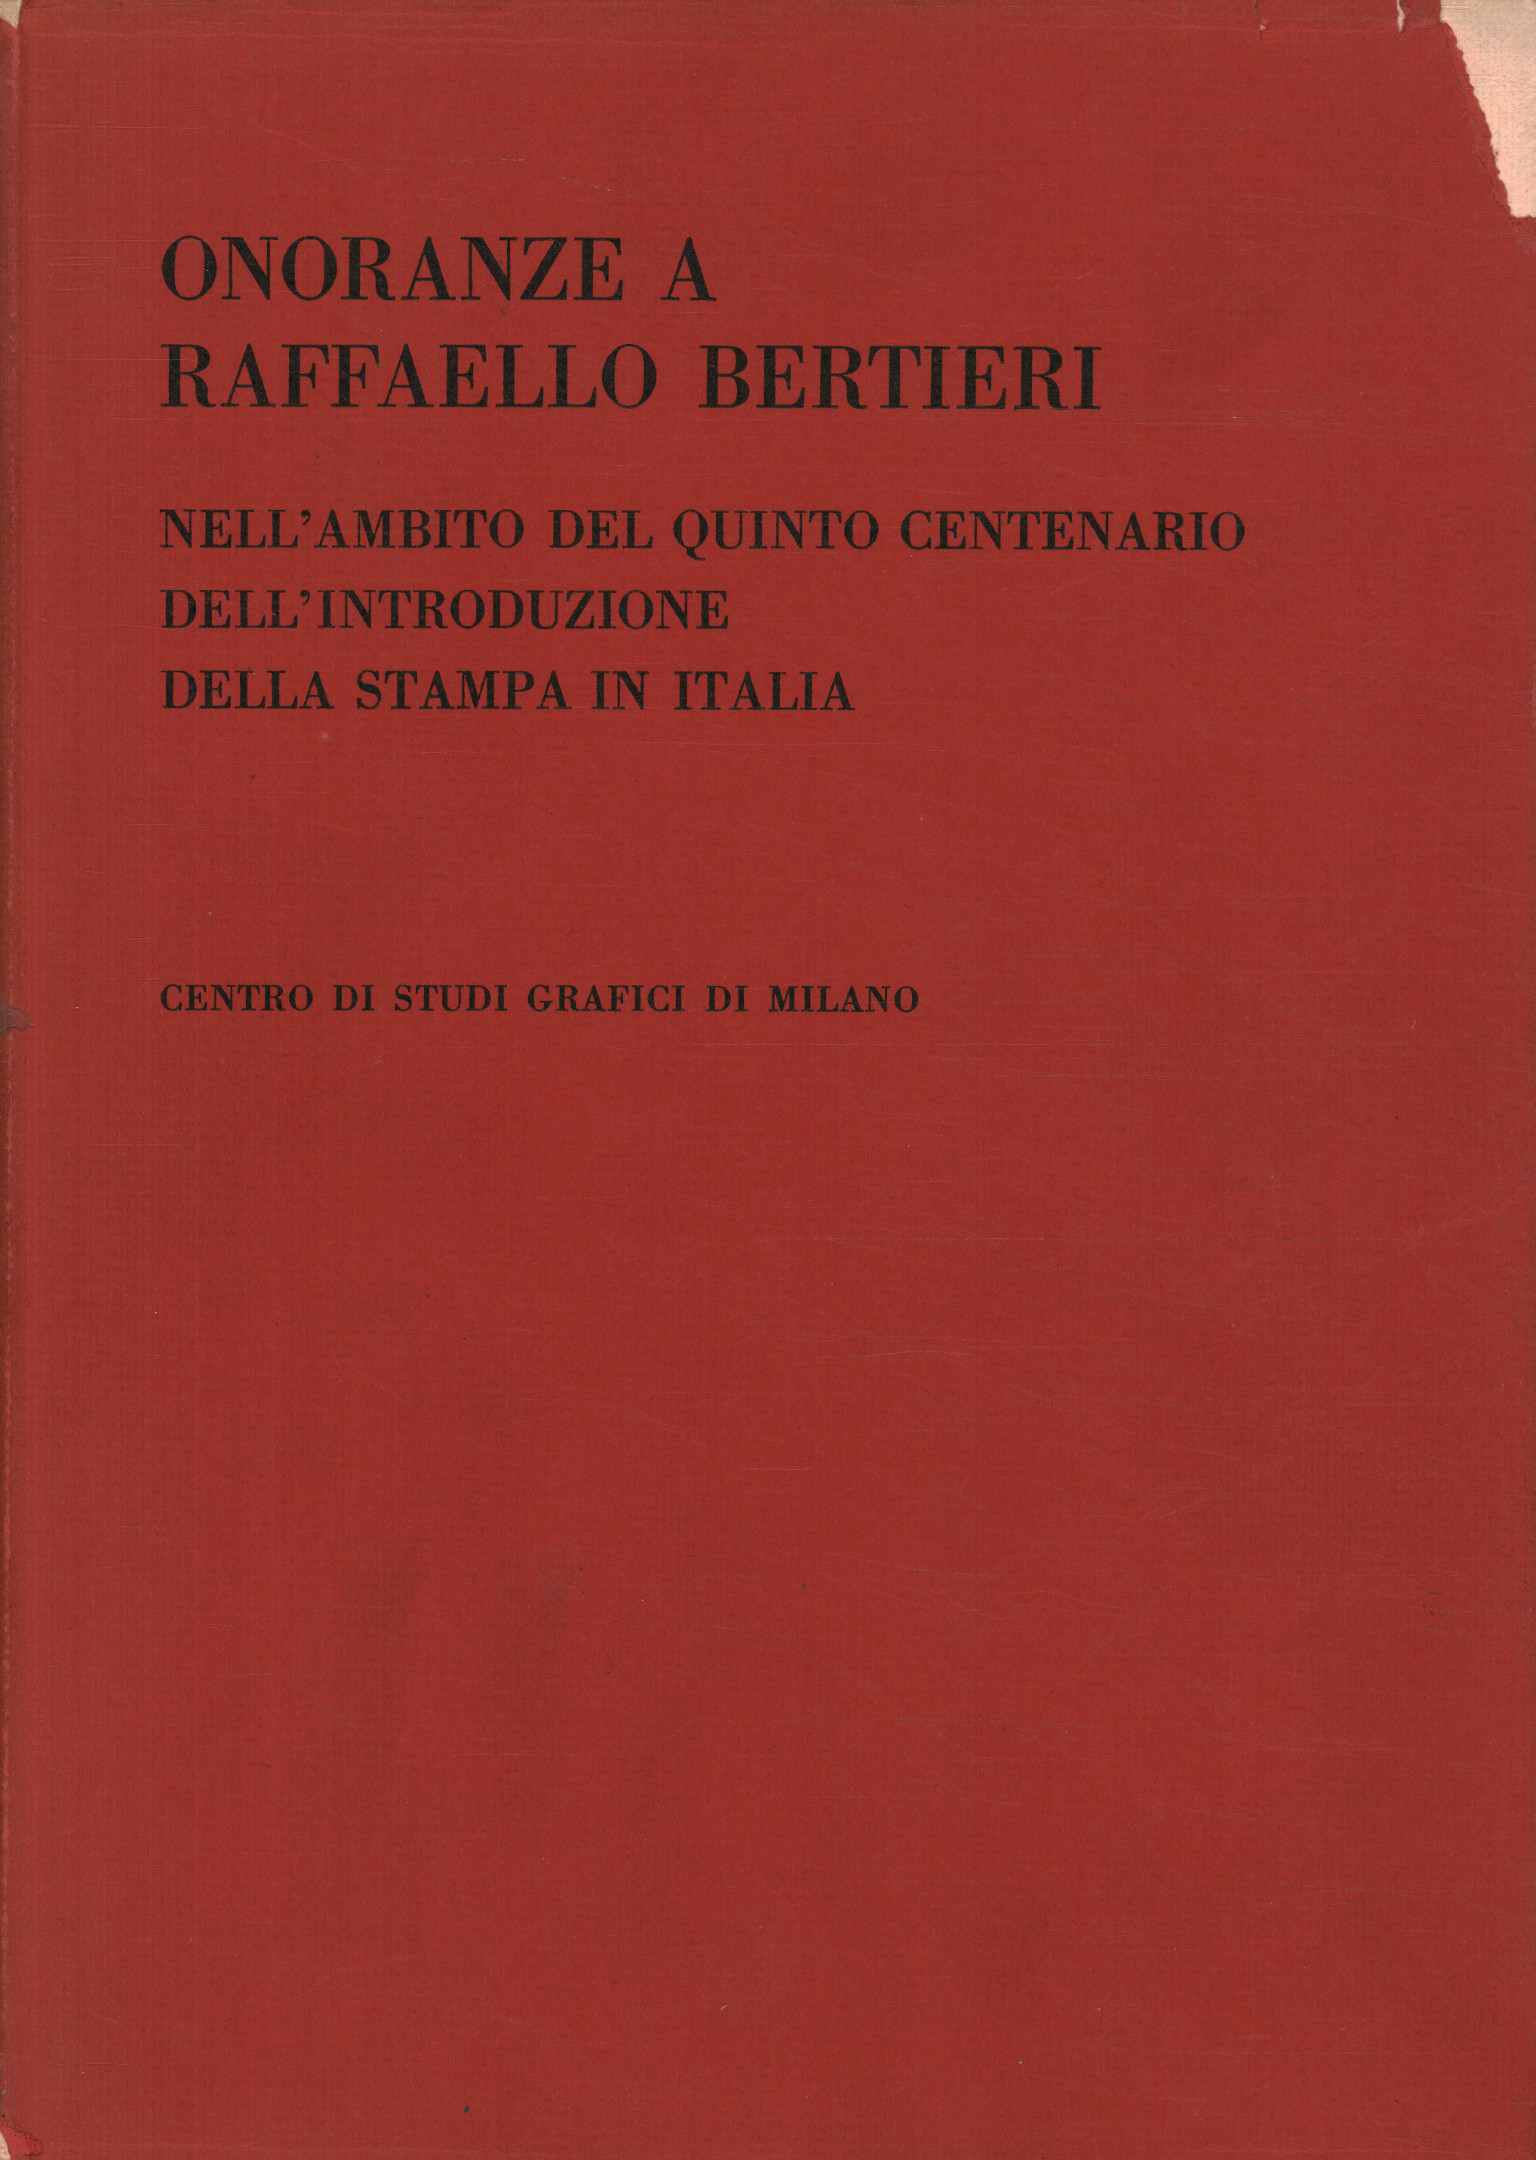 Honors to Raffaello Bertieri in the apostro